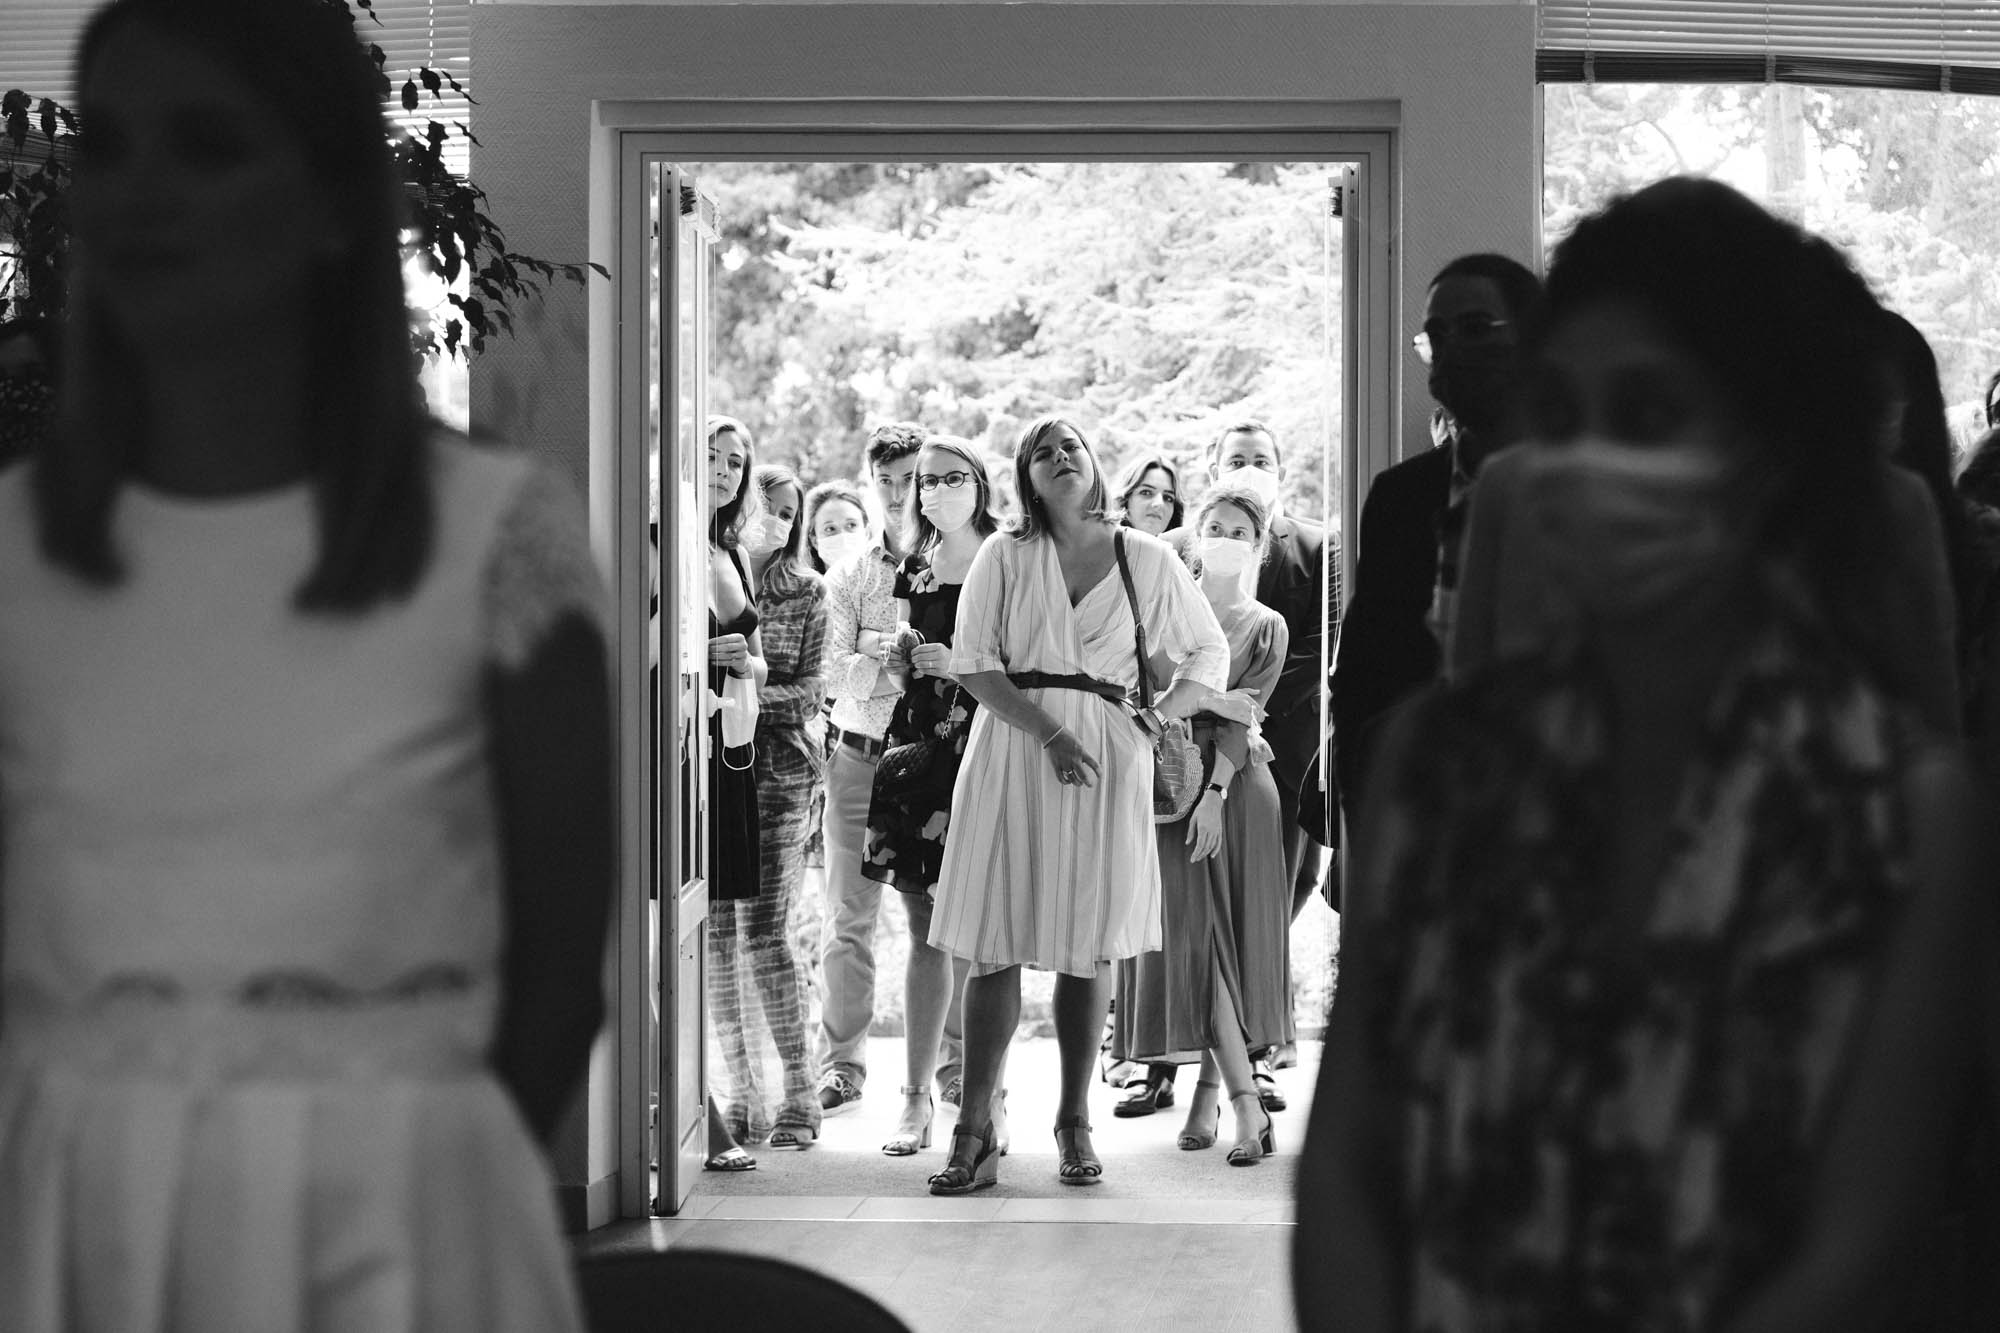 Mariage à Arcachon: une partie des invités doit rester en dehors de la mairie pendant la cérémonie civile au Pyla-sur-Mer, pour cause de covid